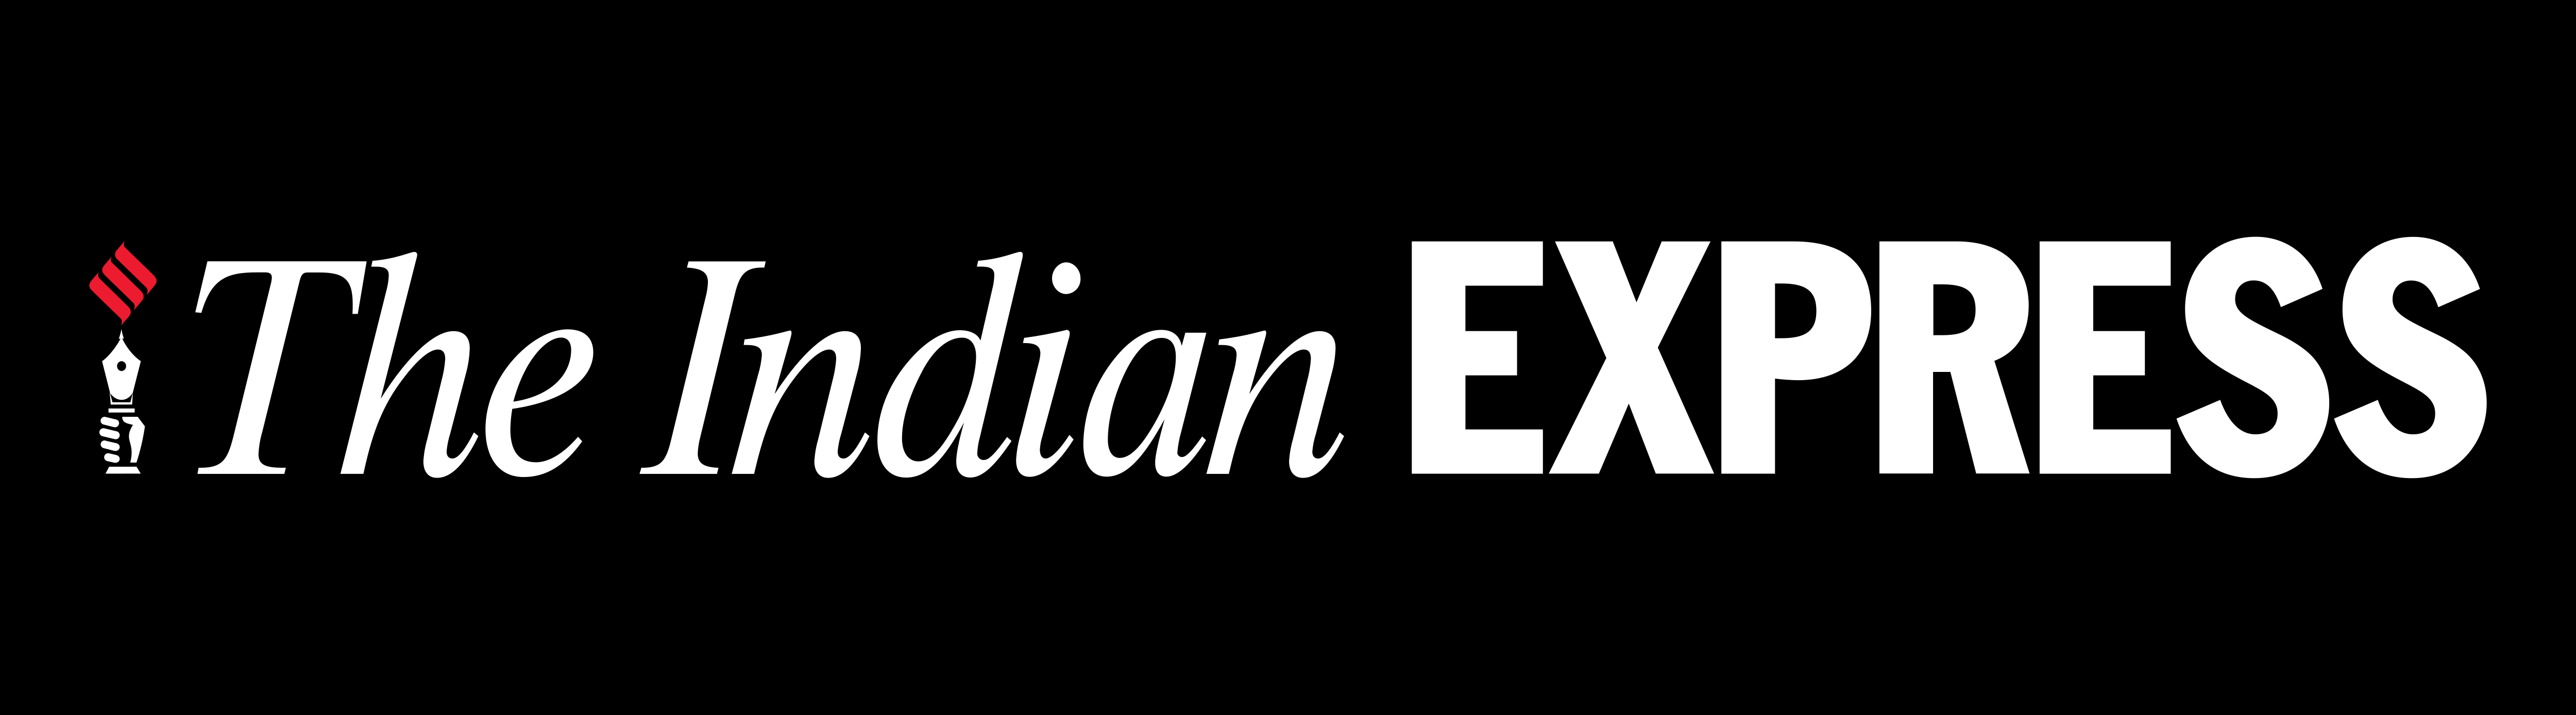 Indian Express – Logos Download